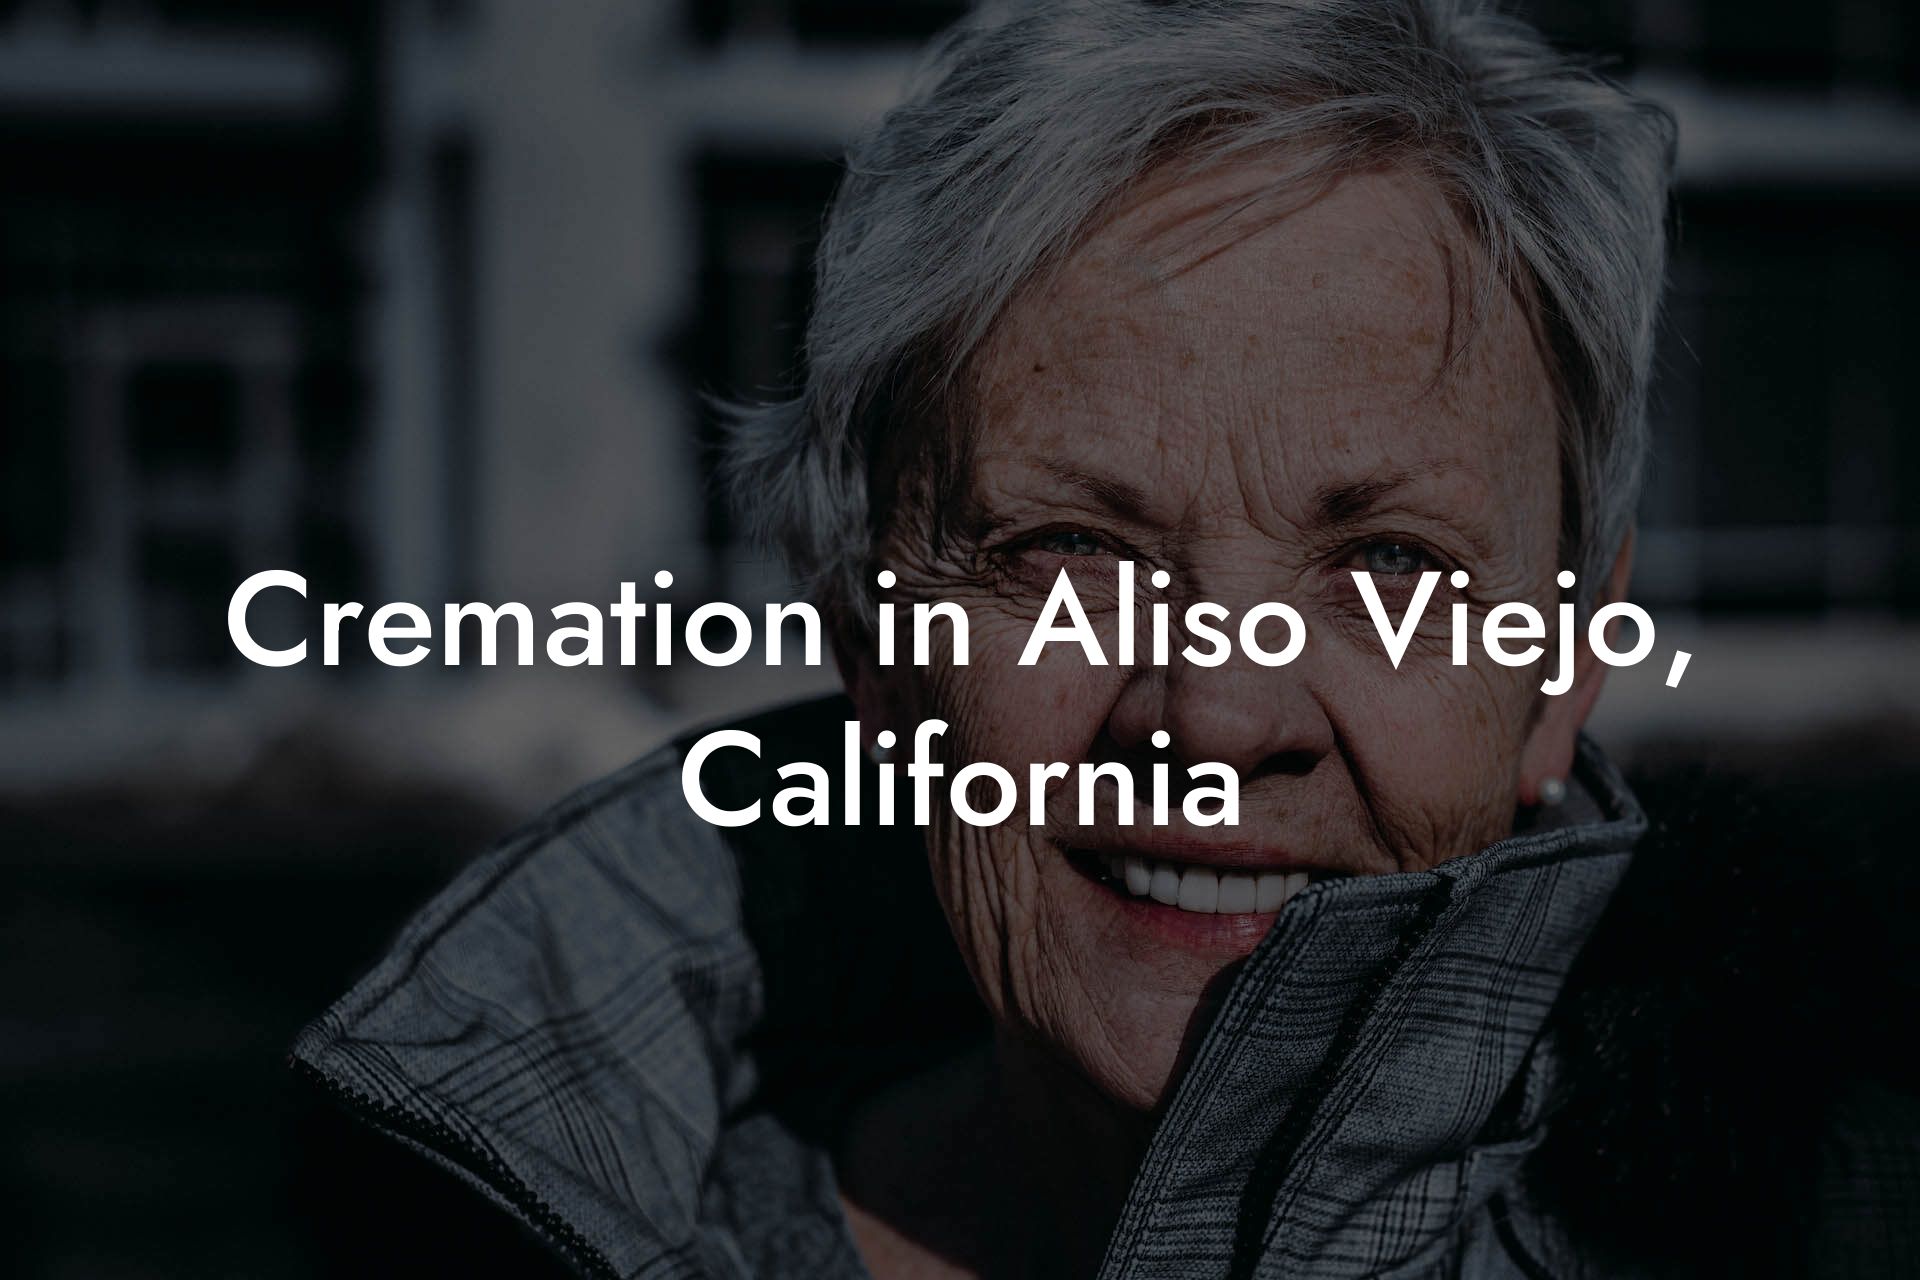 Cremation in Aliso Viejo, California